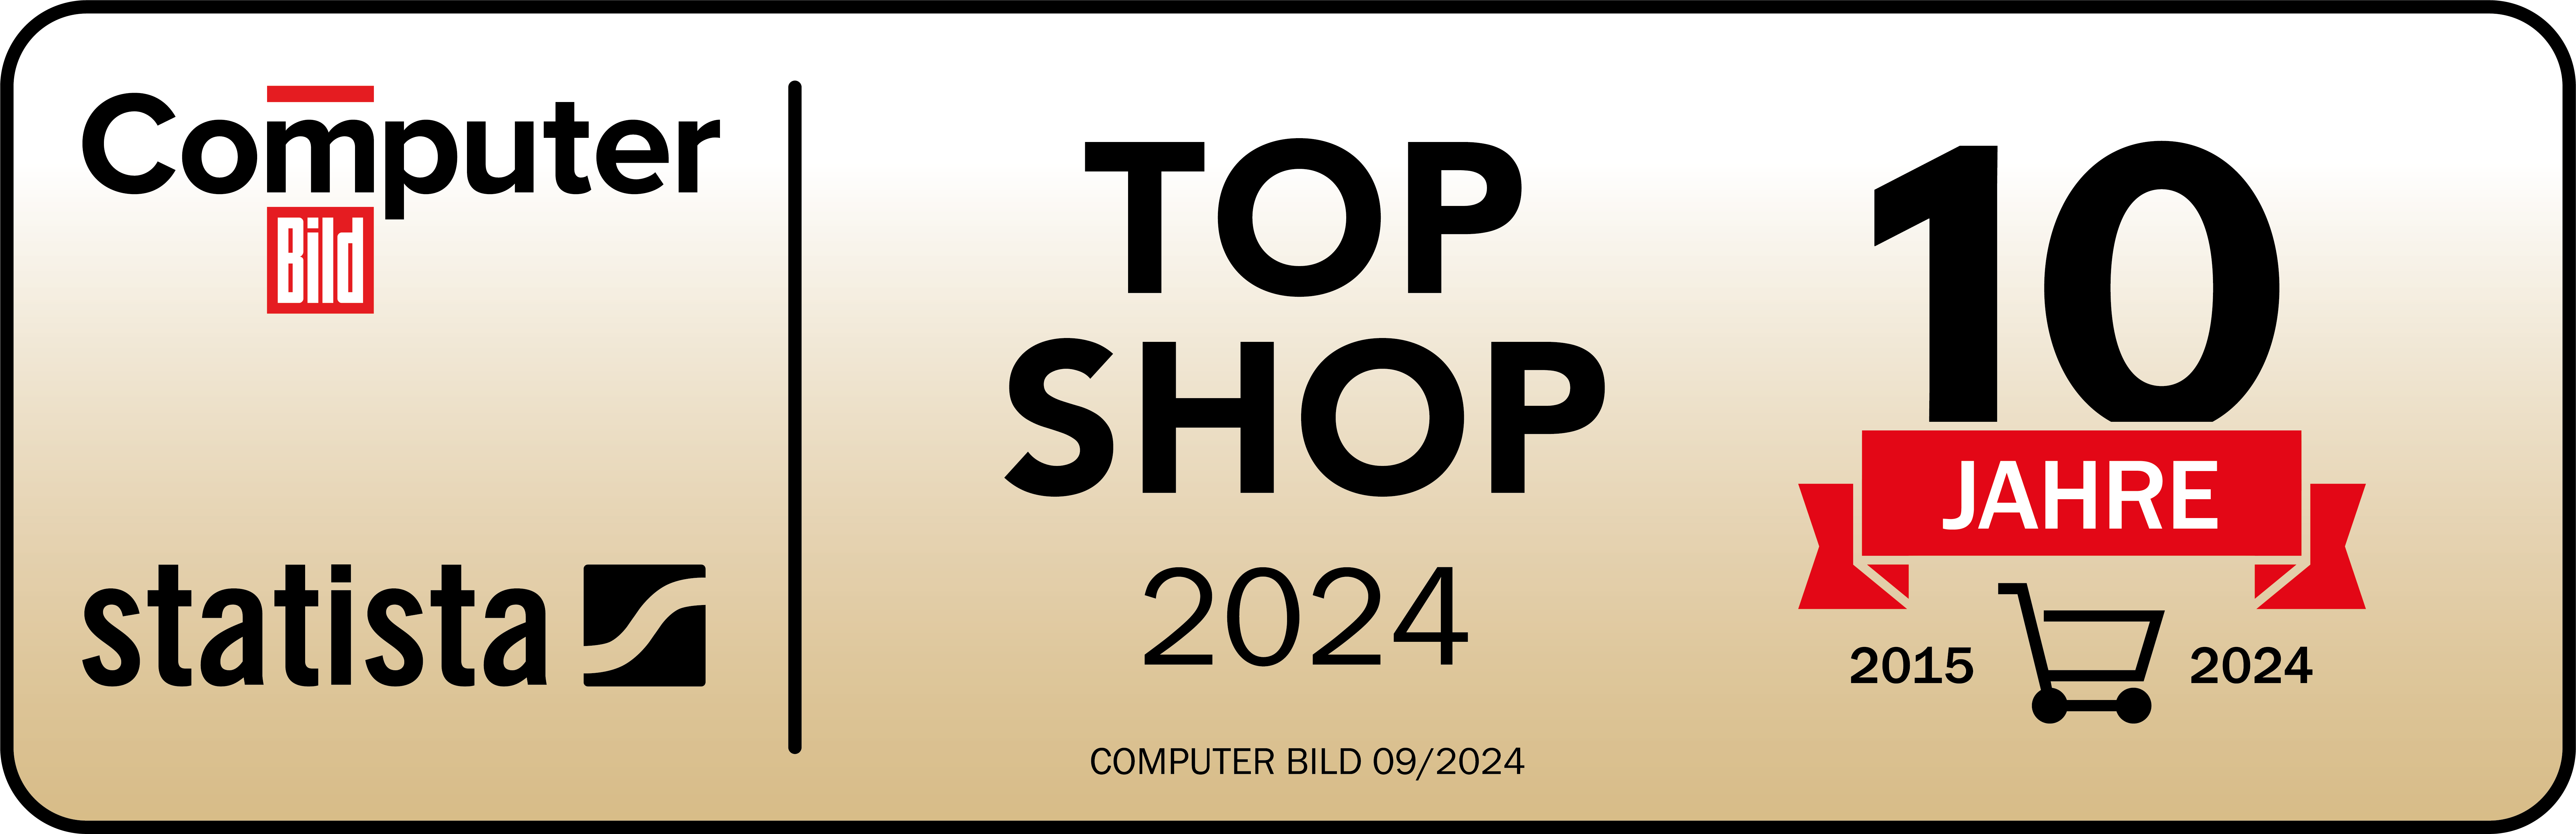 10 Jahre Computerbild Top Shop